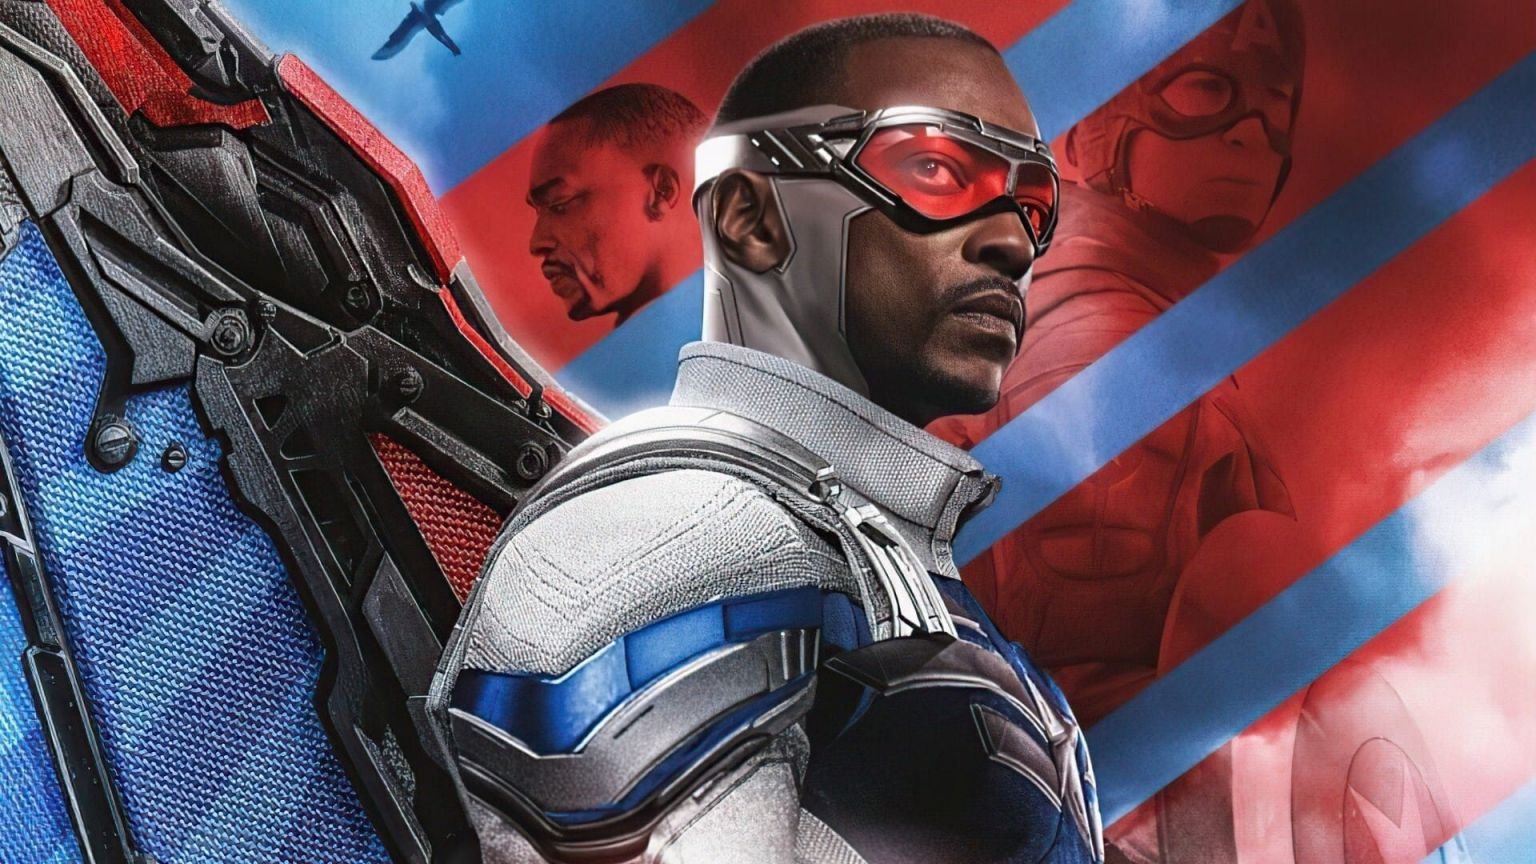 Falcon krijgt zijn eigen superheldenfilm: Anthony Mackie speelt de hoofdrol in 'Captain America 4'